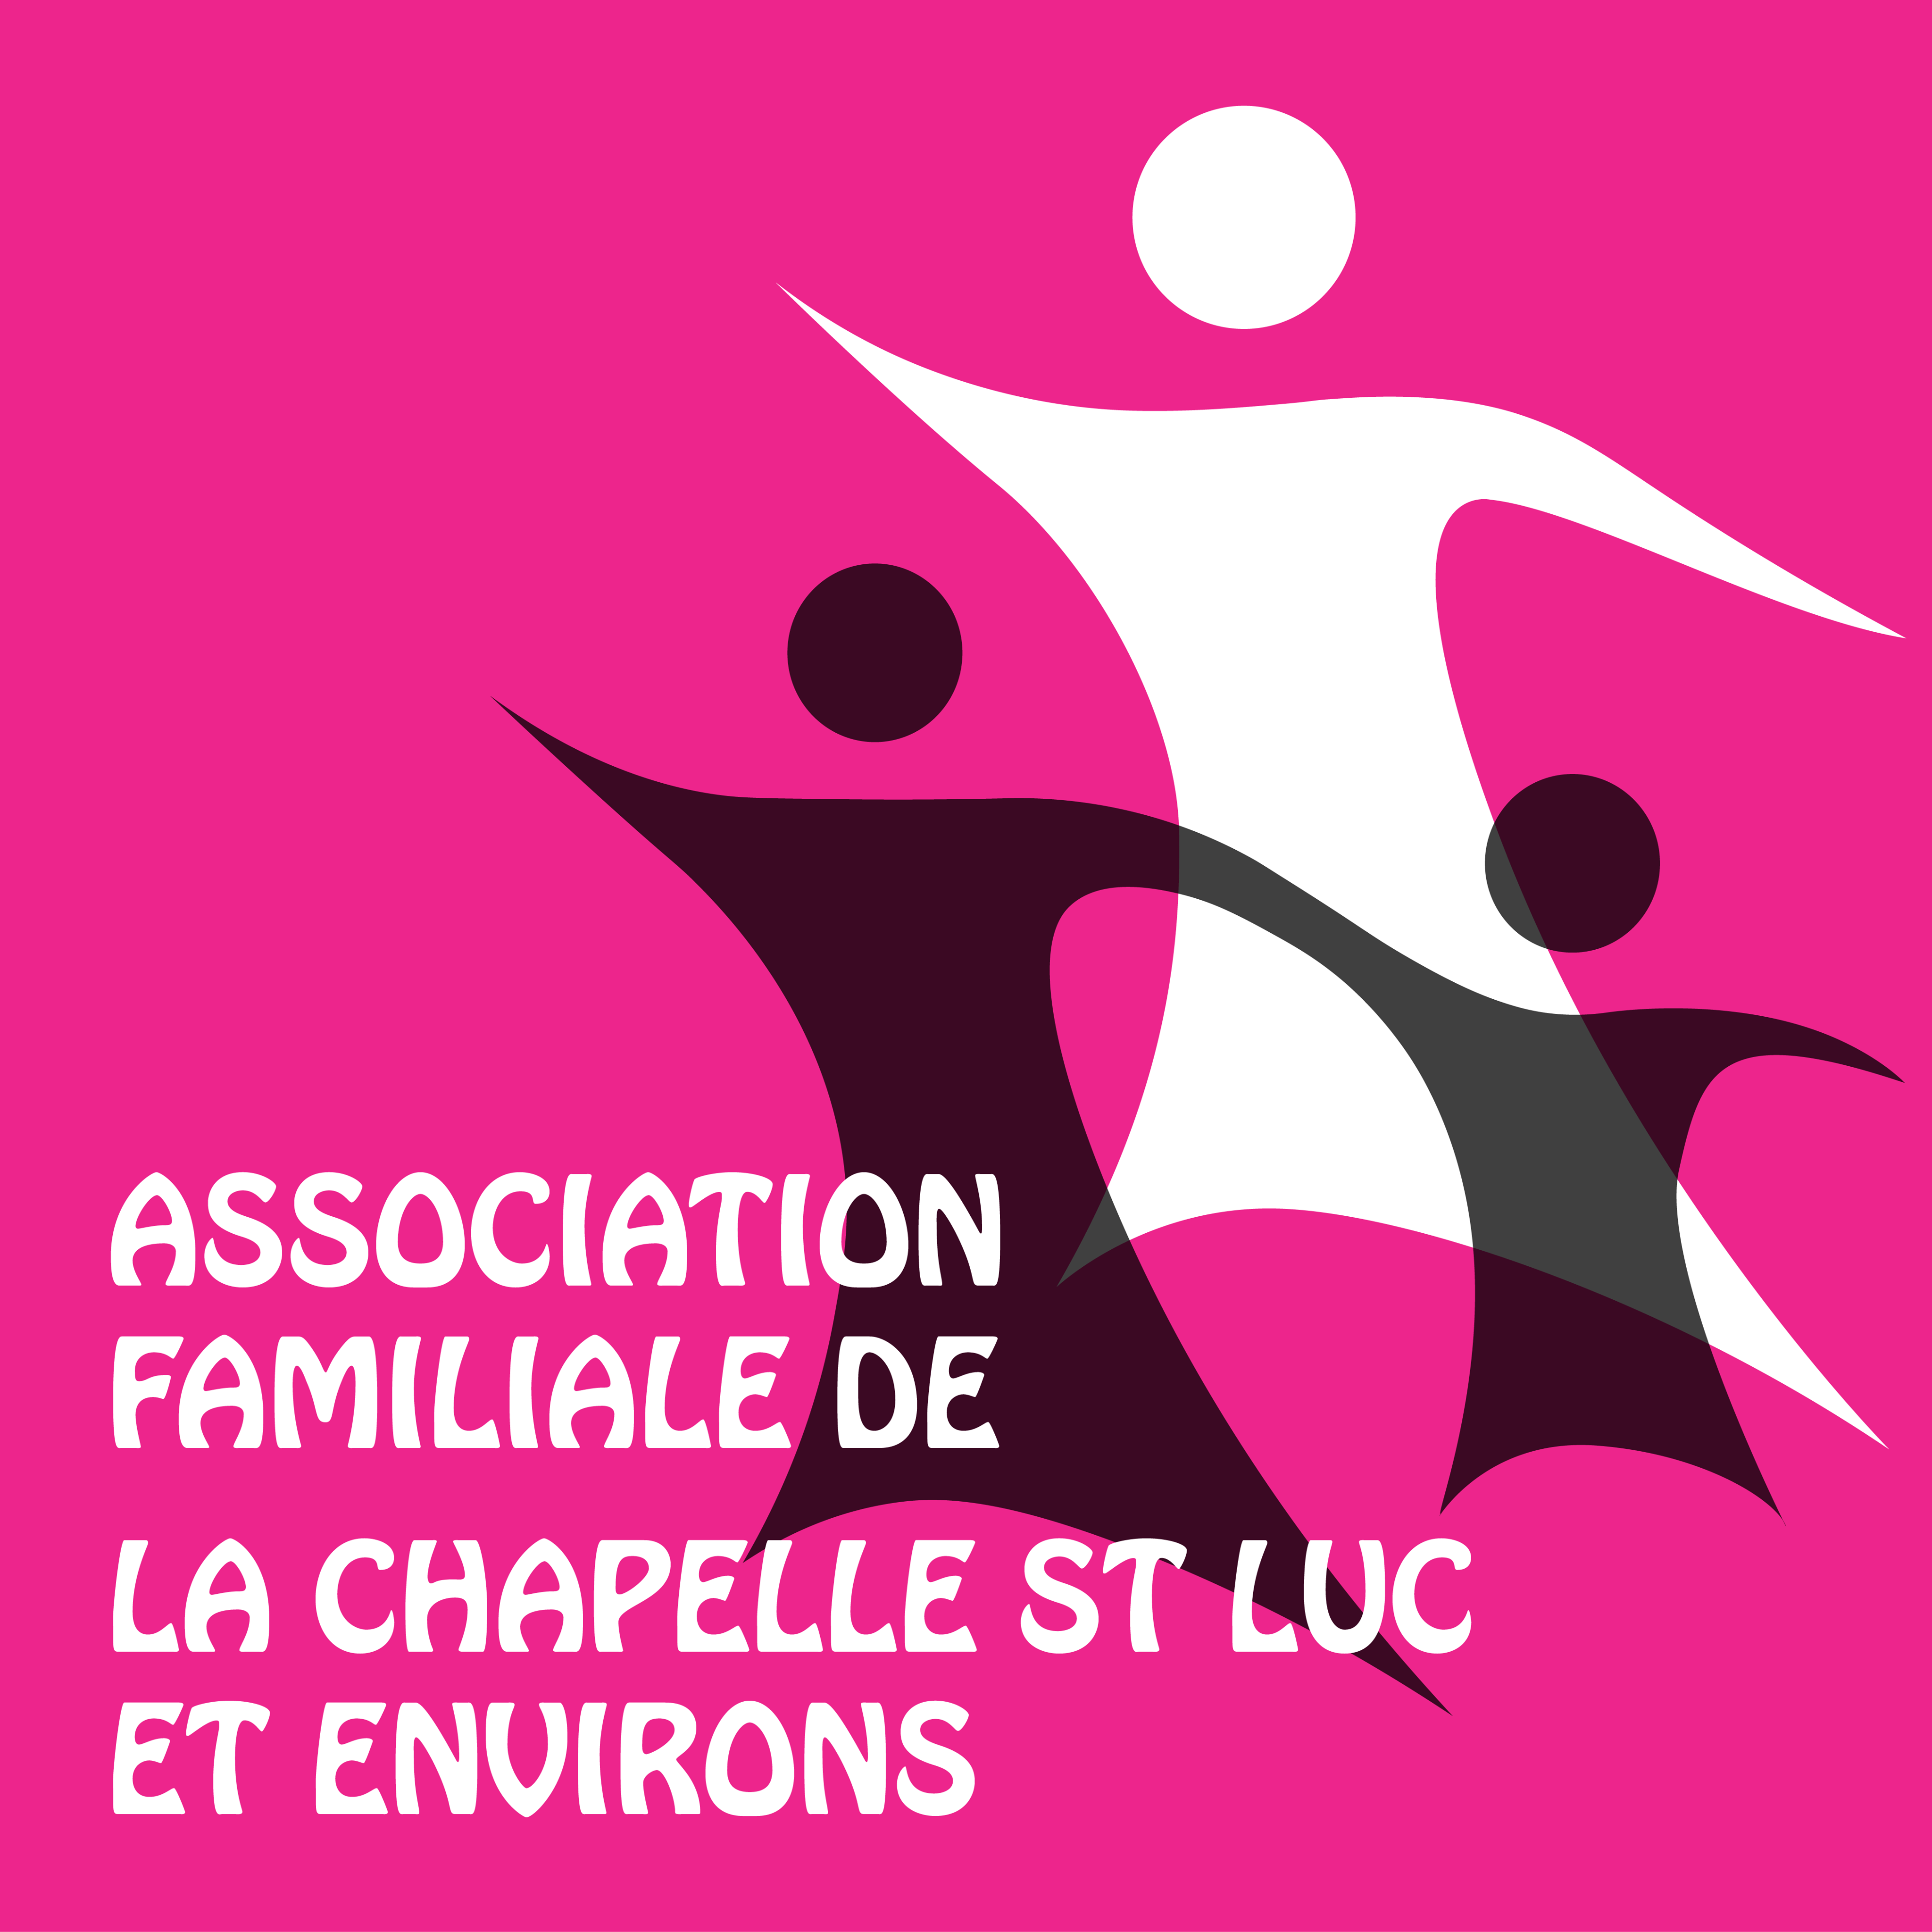 Association Familiale de La Chapelle St Luc